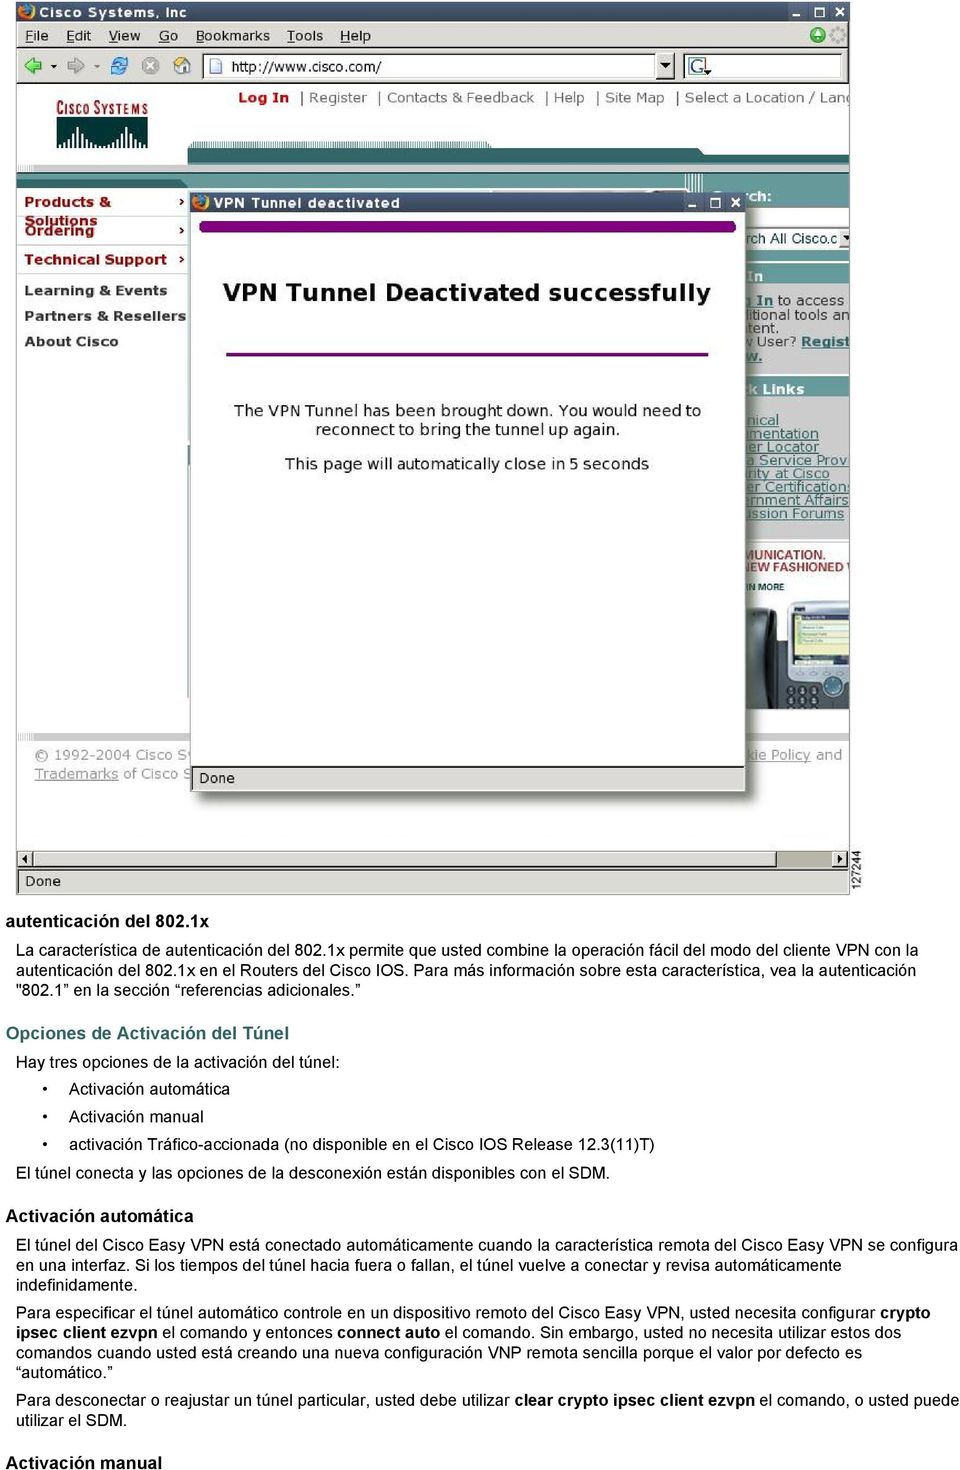 Opciones de Activación del Túnel Hay tres opciones de la activación del túnel: Activación automática Activación manual activación Tráfico-accionada (no disponible en el Cisco IOS Release 12.